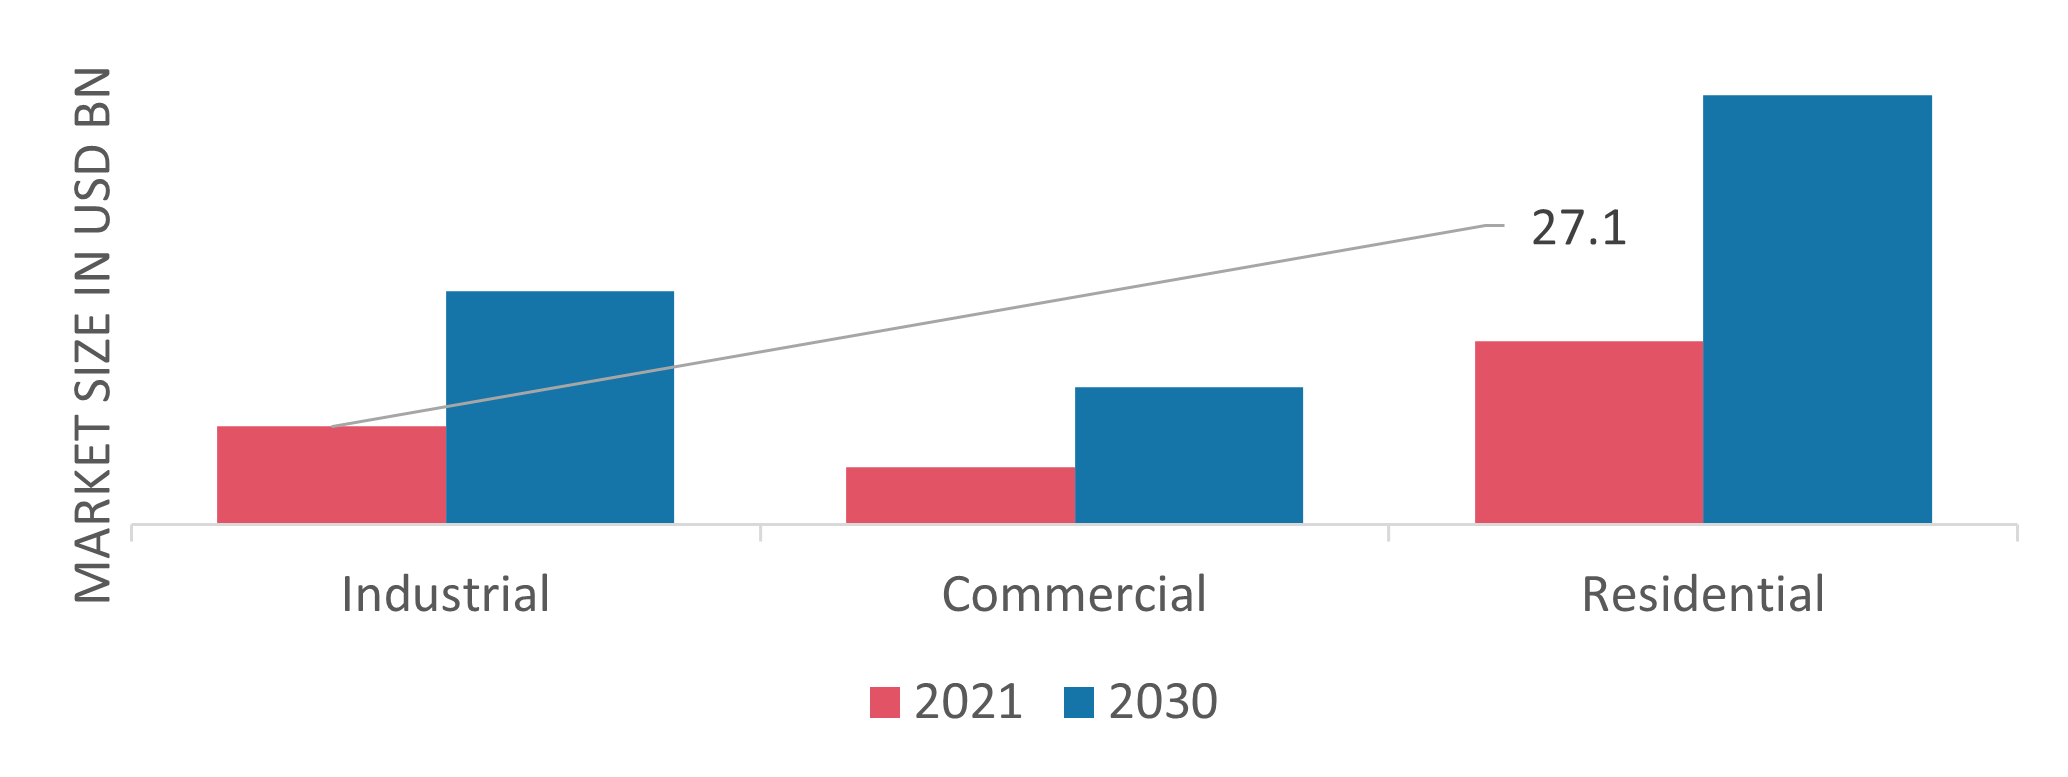 Heat Pump Market by End User, 2021 & 2030 (USD Billion)